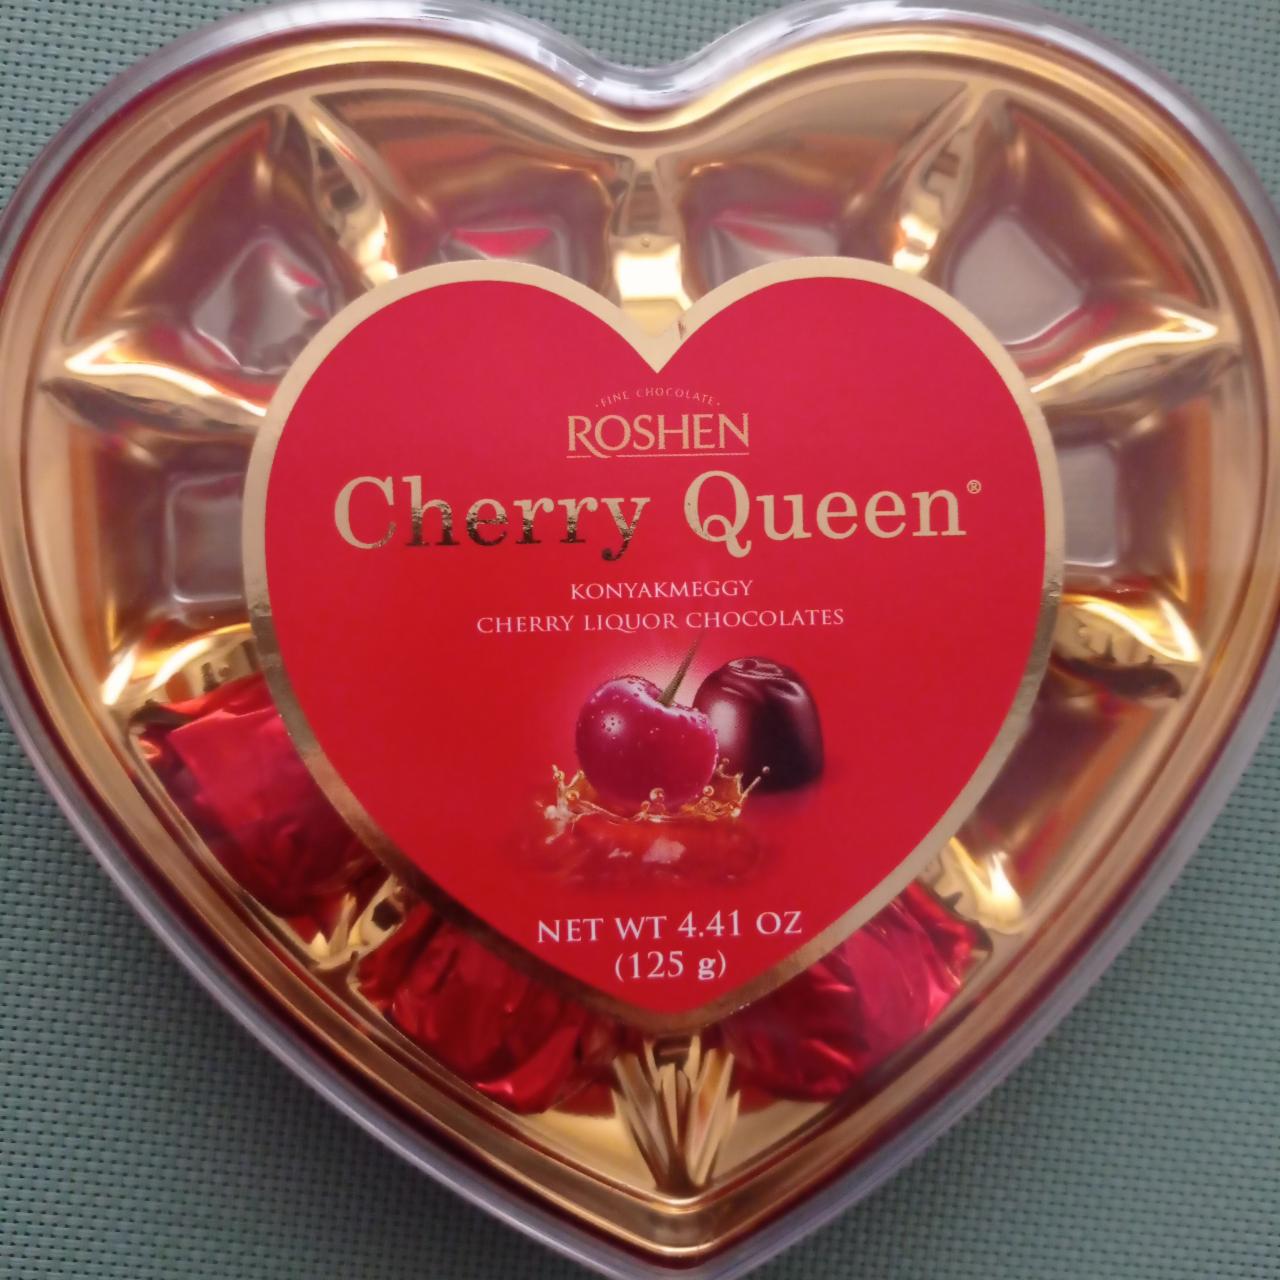 Képek - Roshen Cherry Queen konyakmeggy 125 g